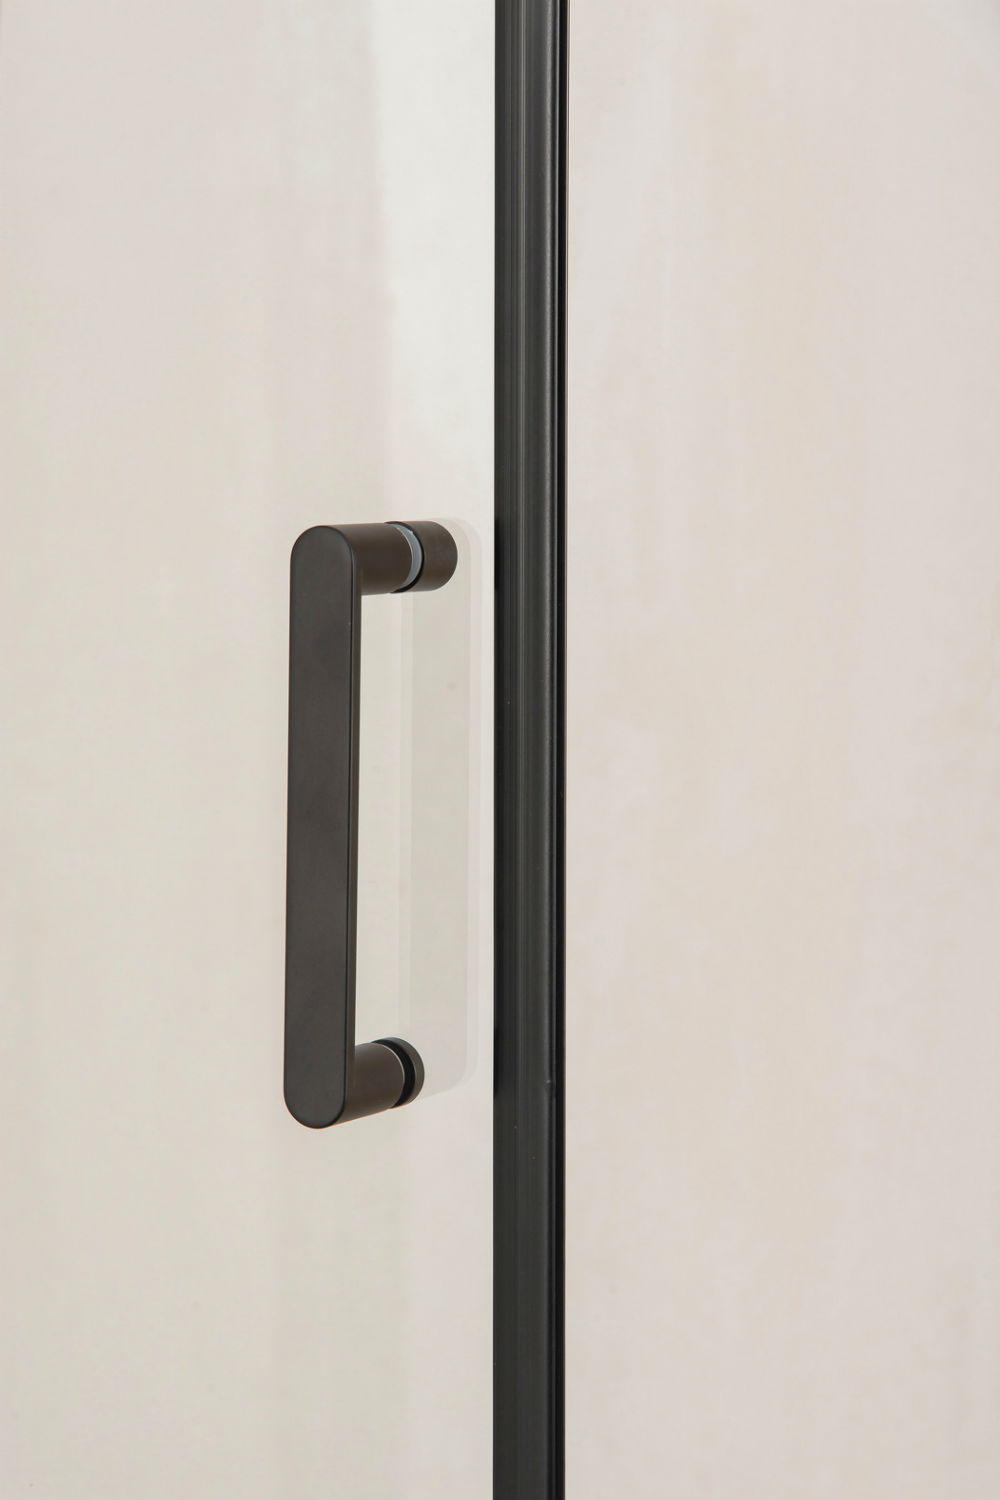 Душевая дверь Orange E05-090TB профиль черный, стекло прозрачное 88 см